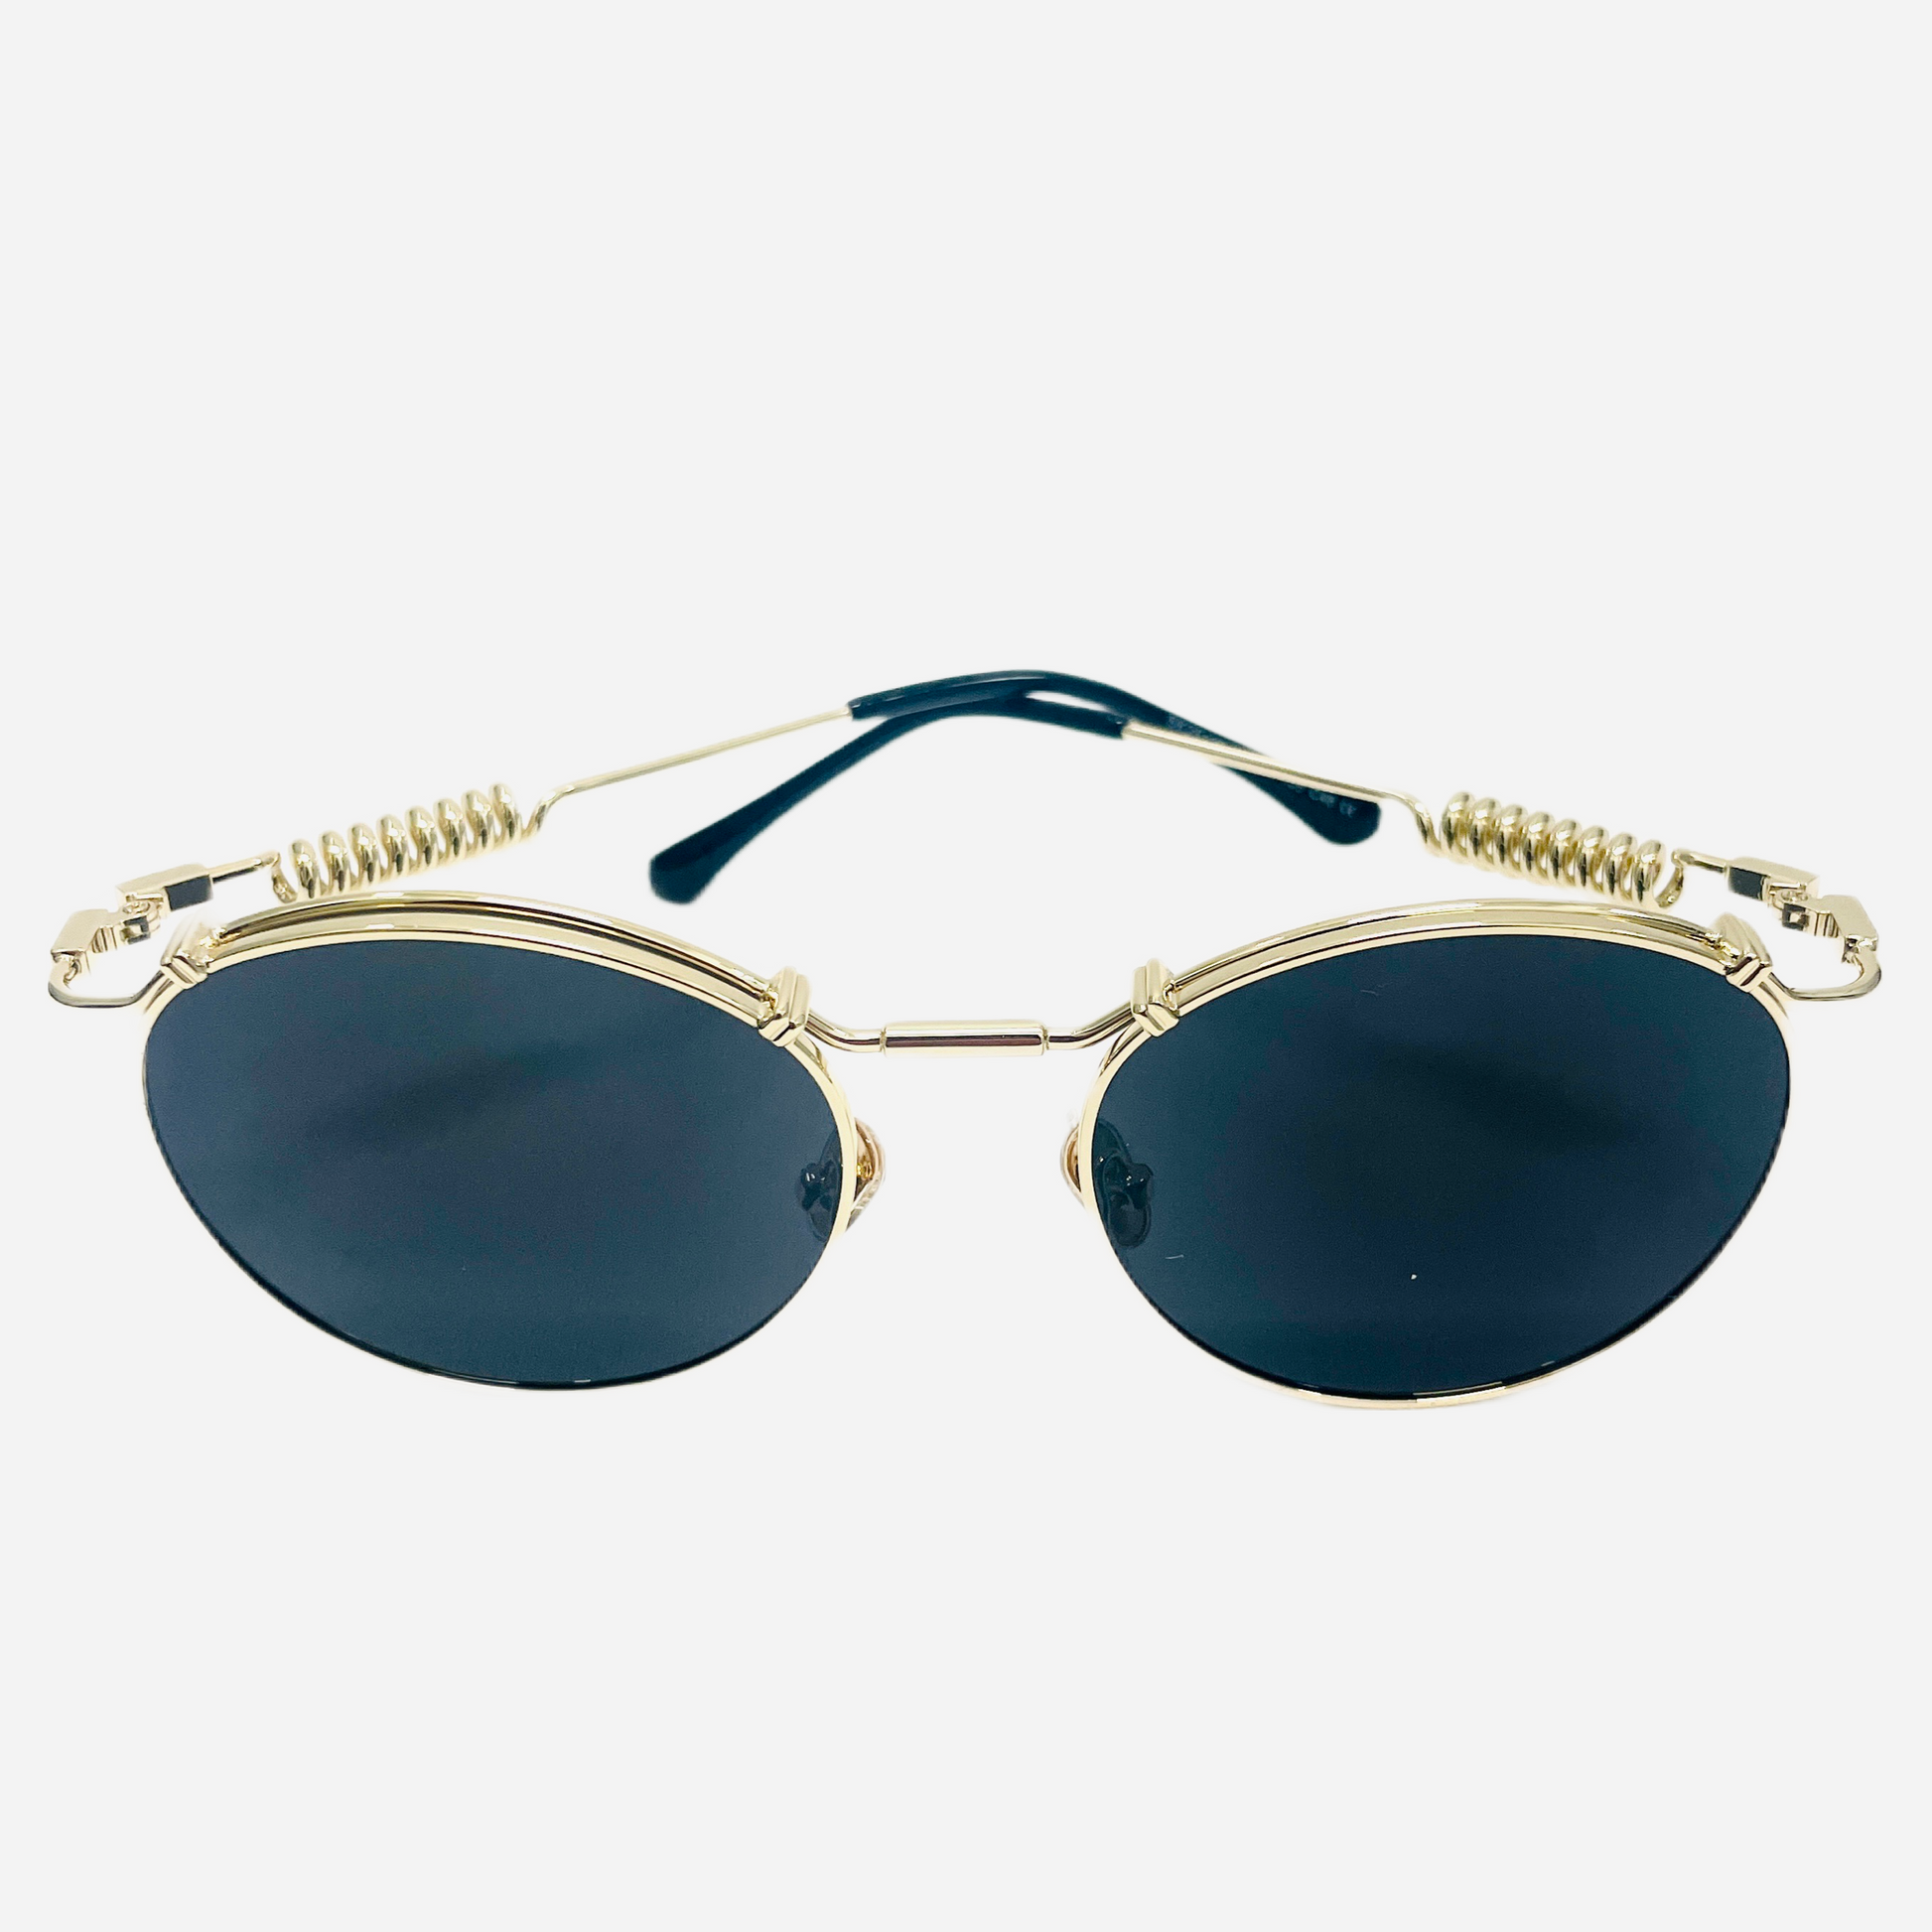 Vintage-Jean-Paul-Gaultier-Sonnenbrille-Sunglasses-Model-56-9174-gold-front